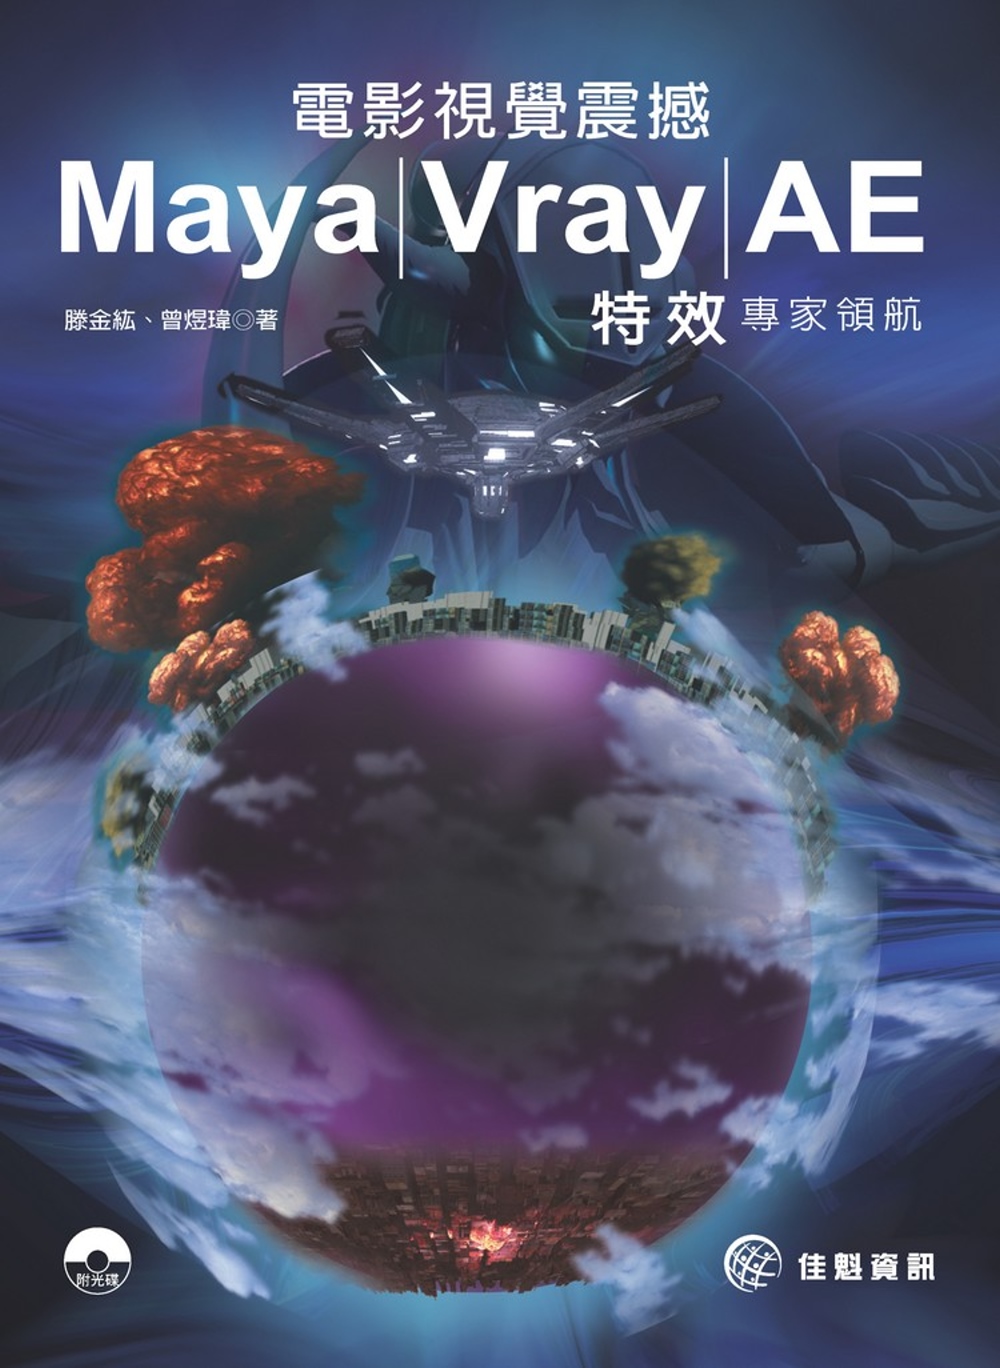 電影視覺震撼 Maya / Vray / AE 特效專家領航